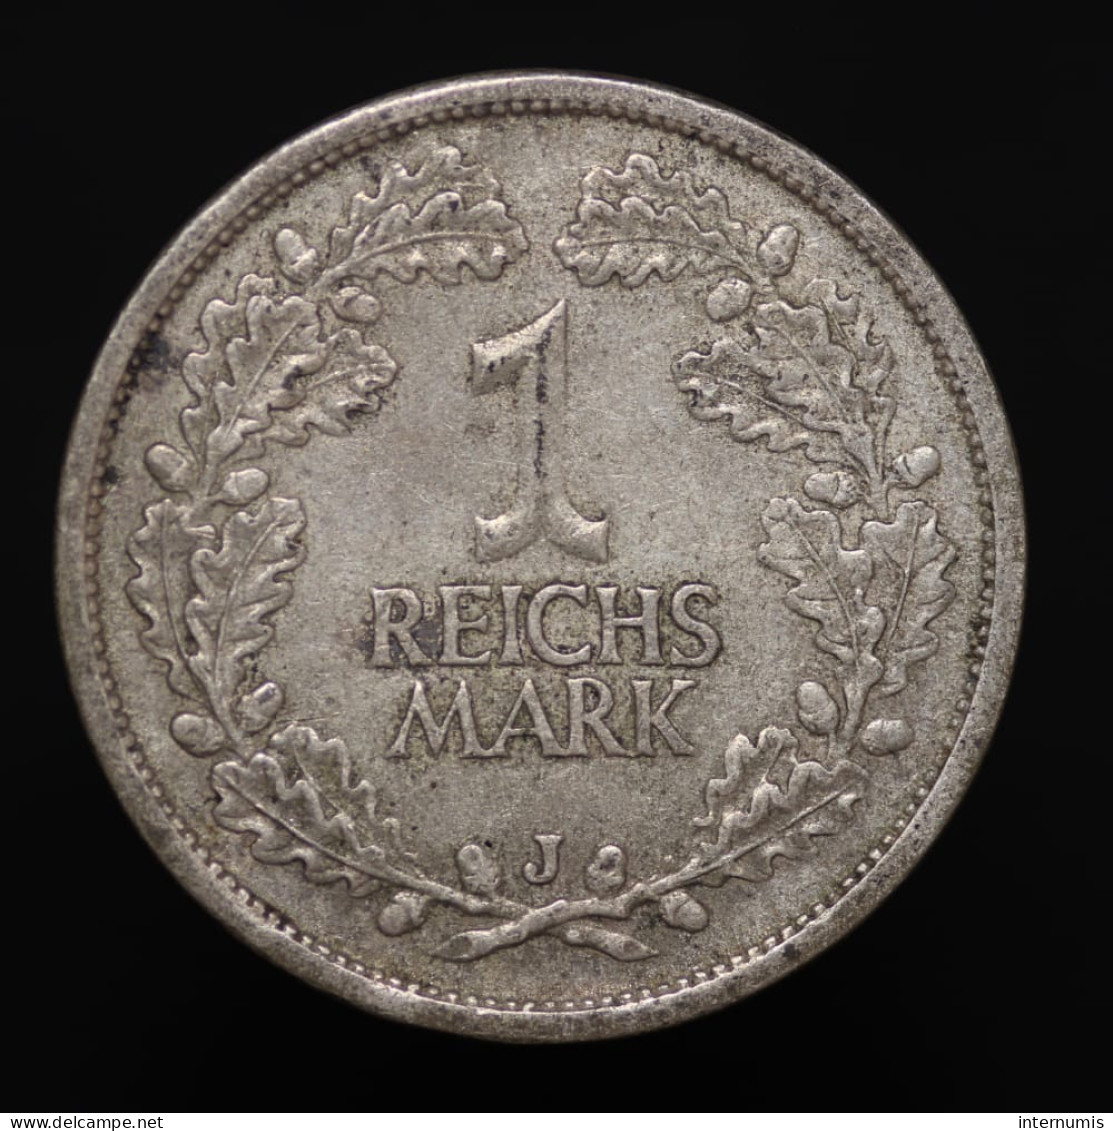 Allemagne / Germany, Weimar Republic, 1 Reichsmark , 1925 - J, Hamburg, Argent (Silver), SUP (AU), KM#44 - 1 Mark & 1 Reichsmark